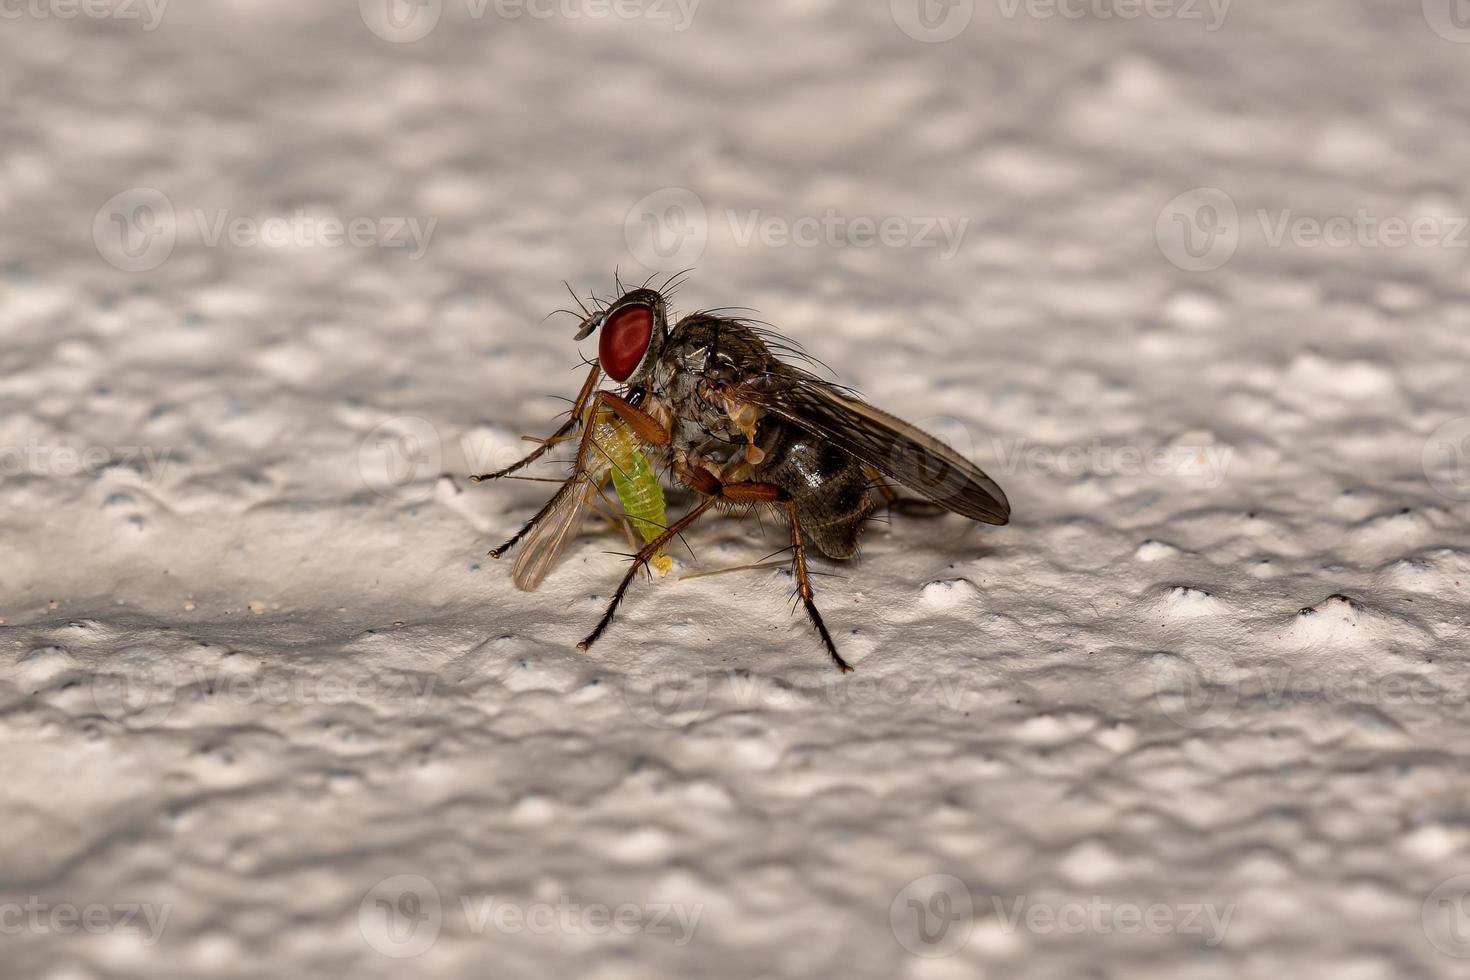 erwachsene Moschusfliege, die eine erwachsene nicht beißende Mücke jagt foto